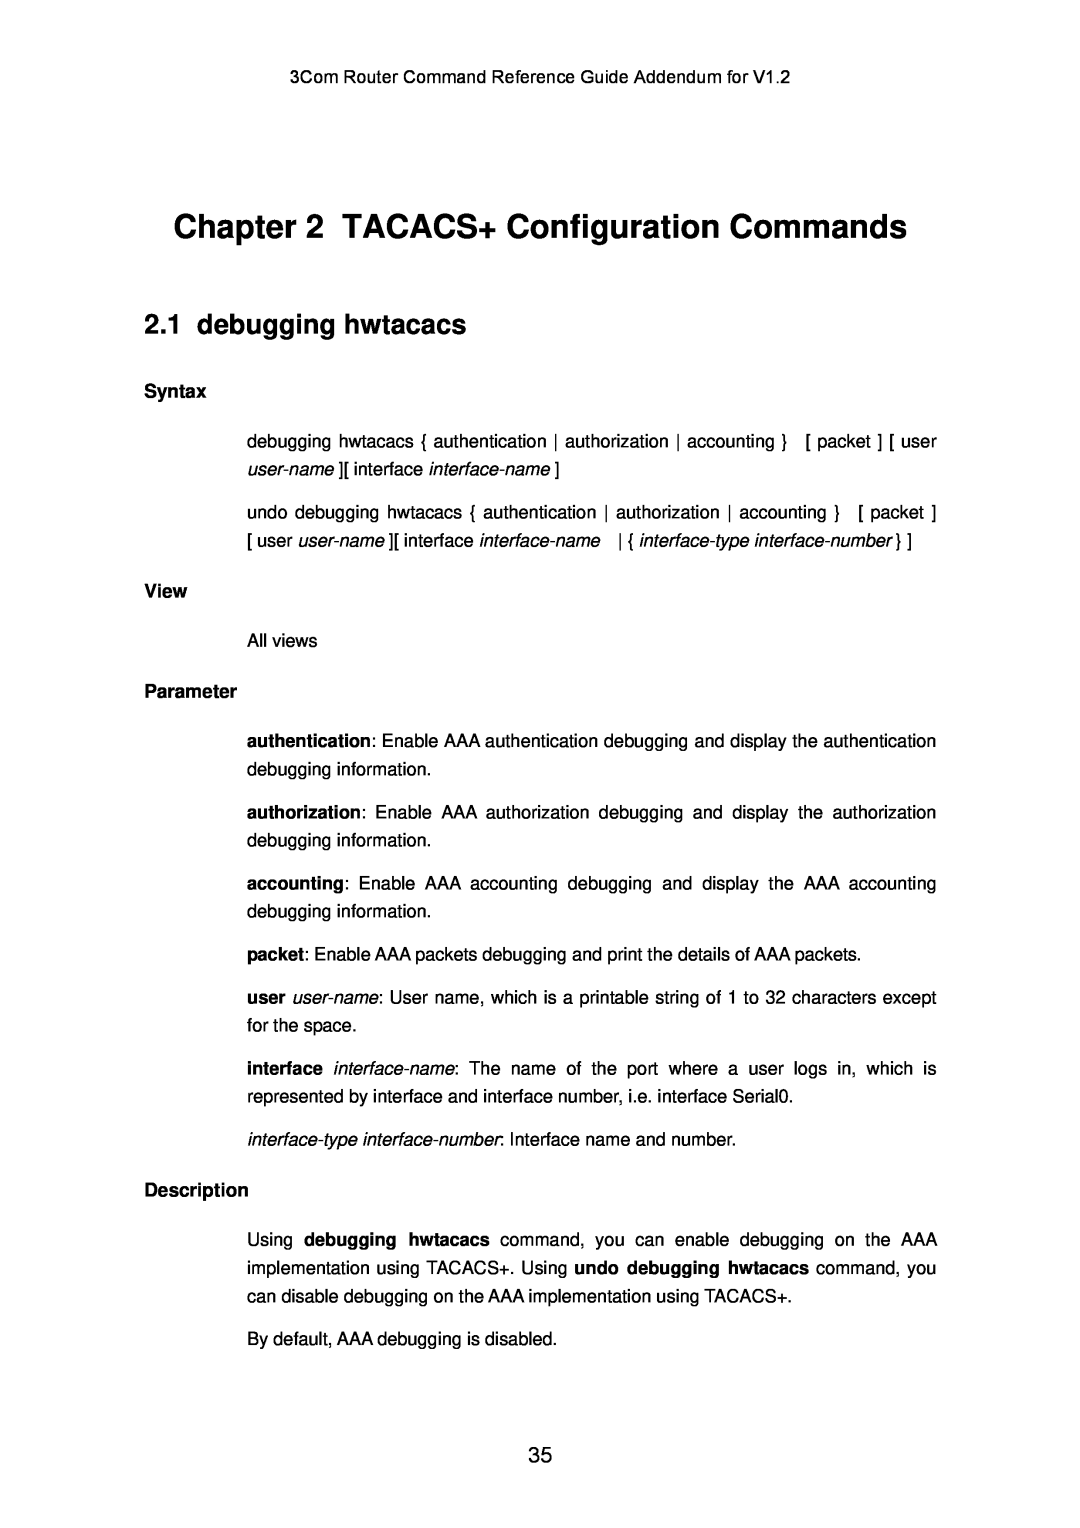 3Com 10014302 manual TACACS+ Configuration Commands, debugging hwtacacs, Syntax, View, Parameter, Description 